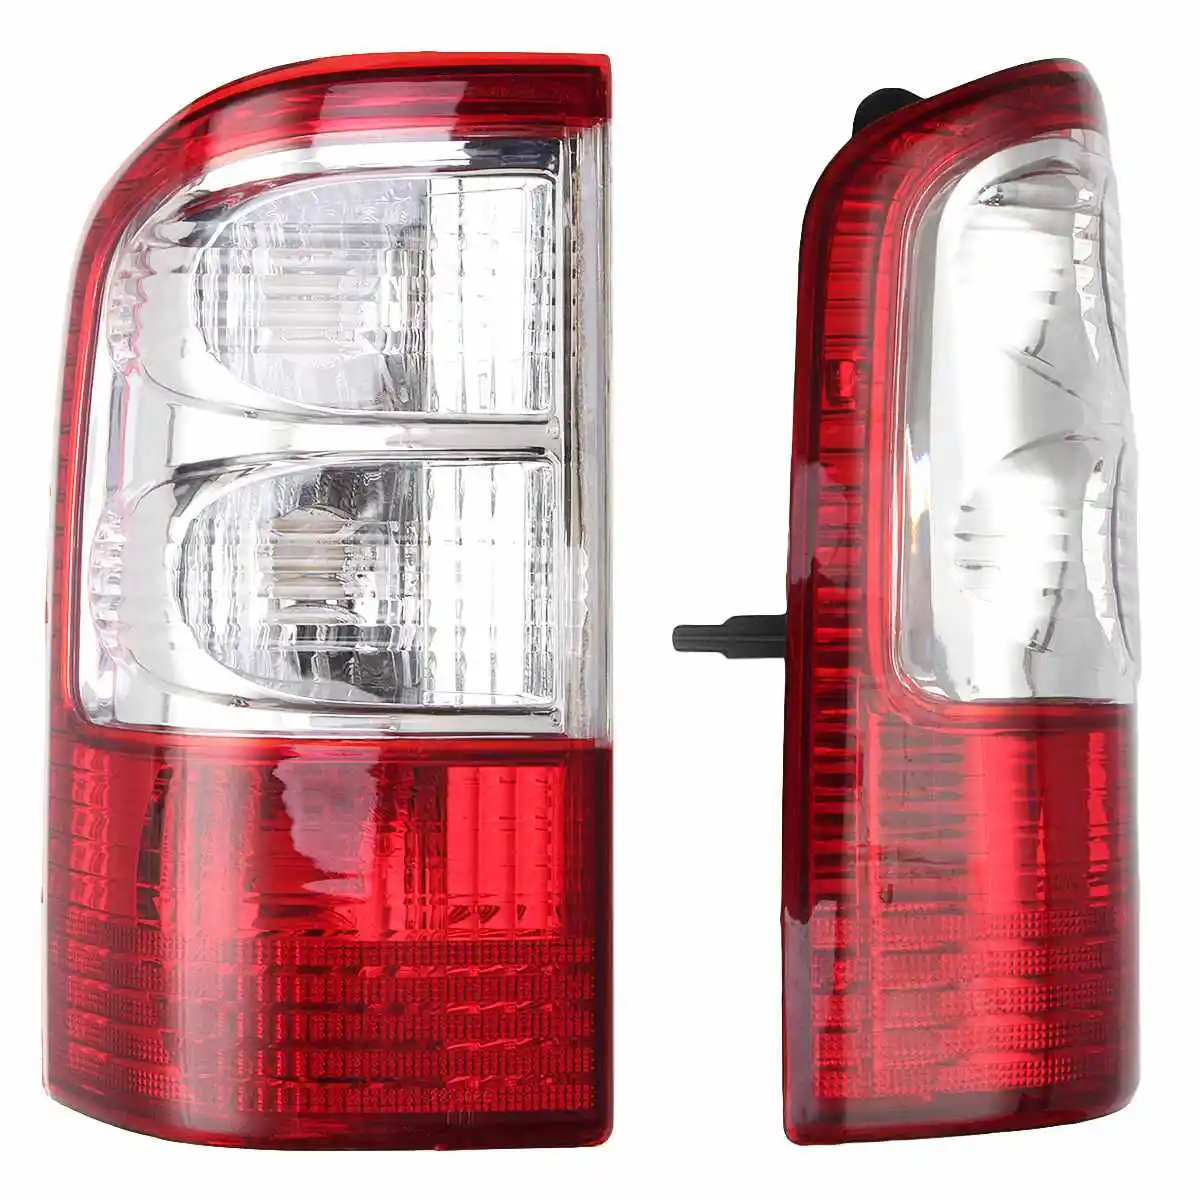 12 V задний светильник для Nissan Patrol GU Series 2 2001 2002 2003 2004 фонарь стоп-сигнала ABS задний фонарь светильник лампа без проводов